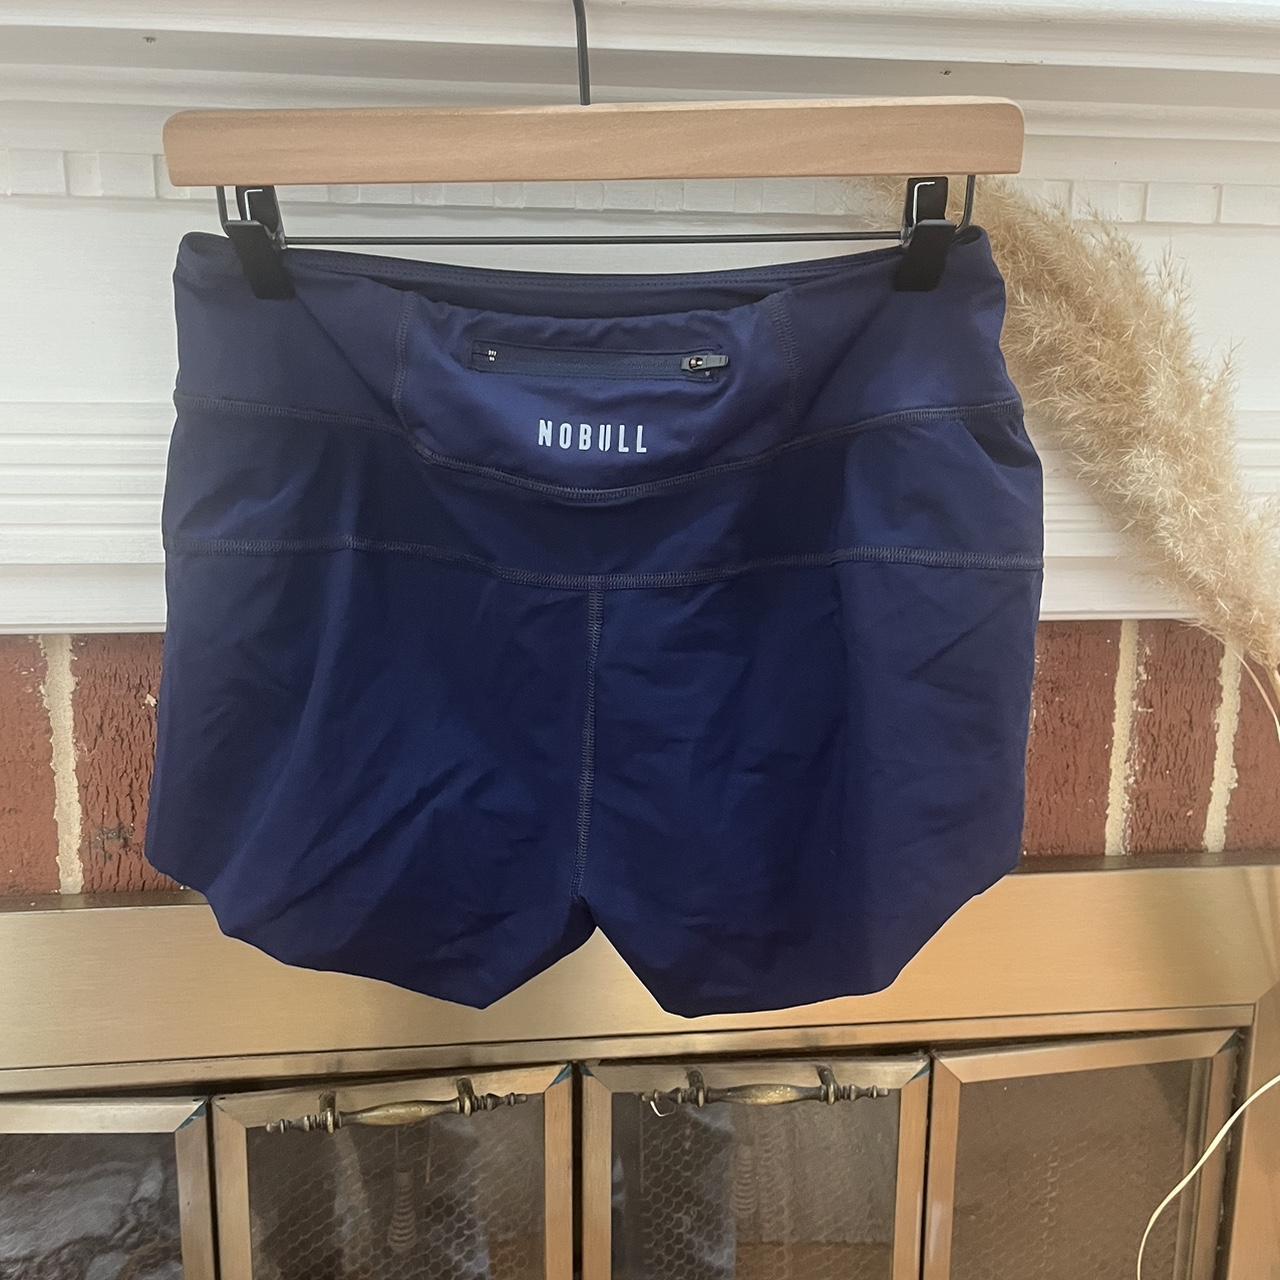 Celer biker shorts, never worn!! Size Medium - Depop